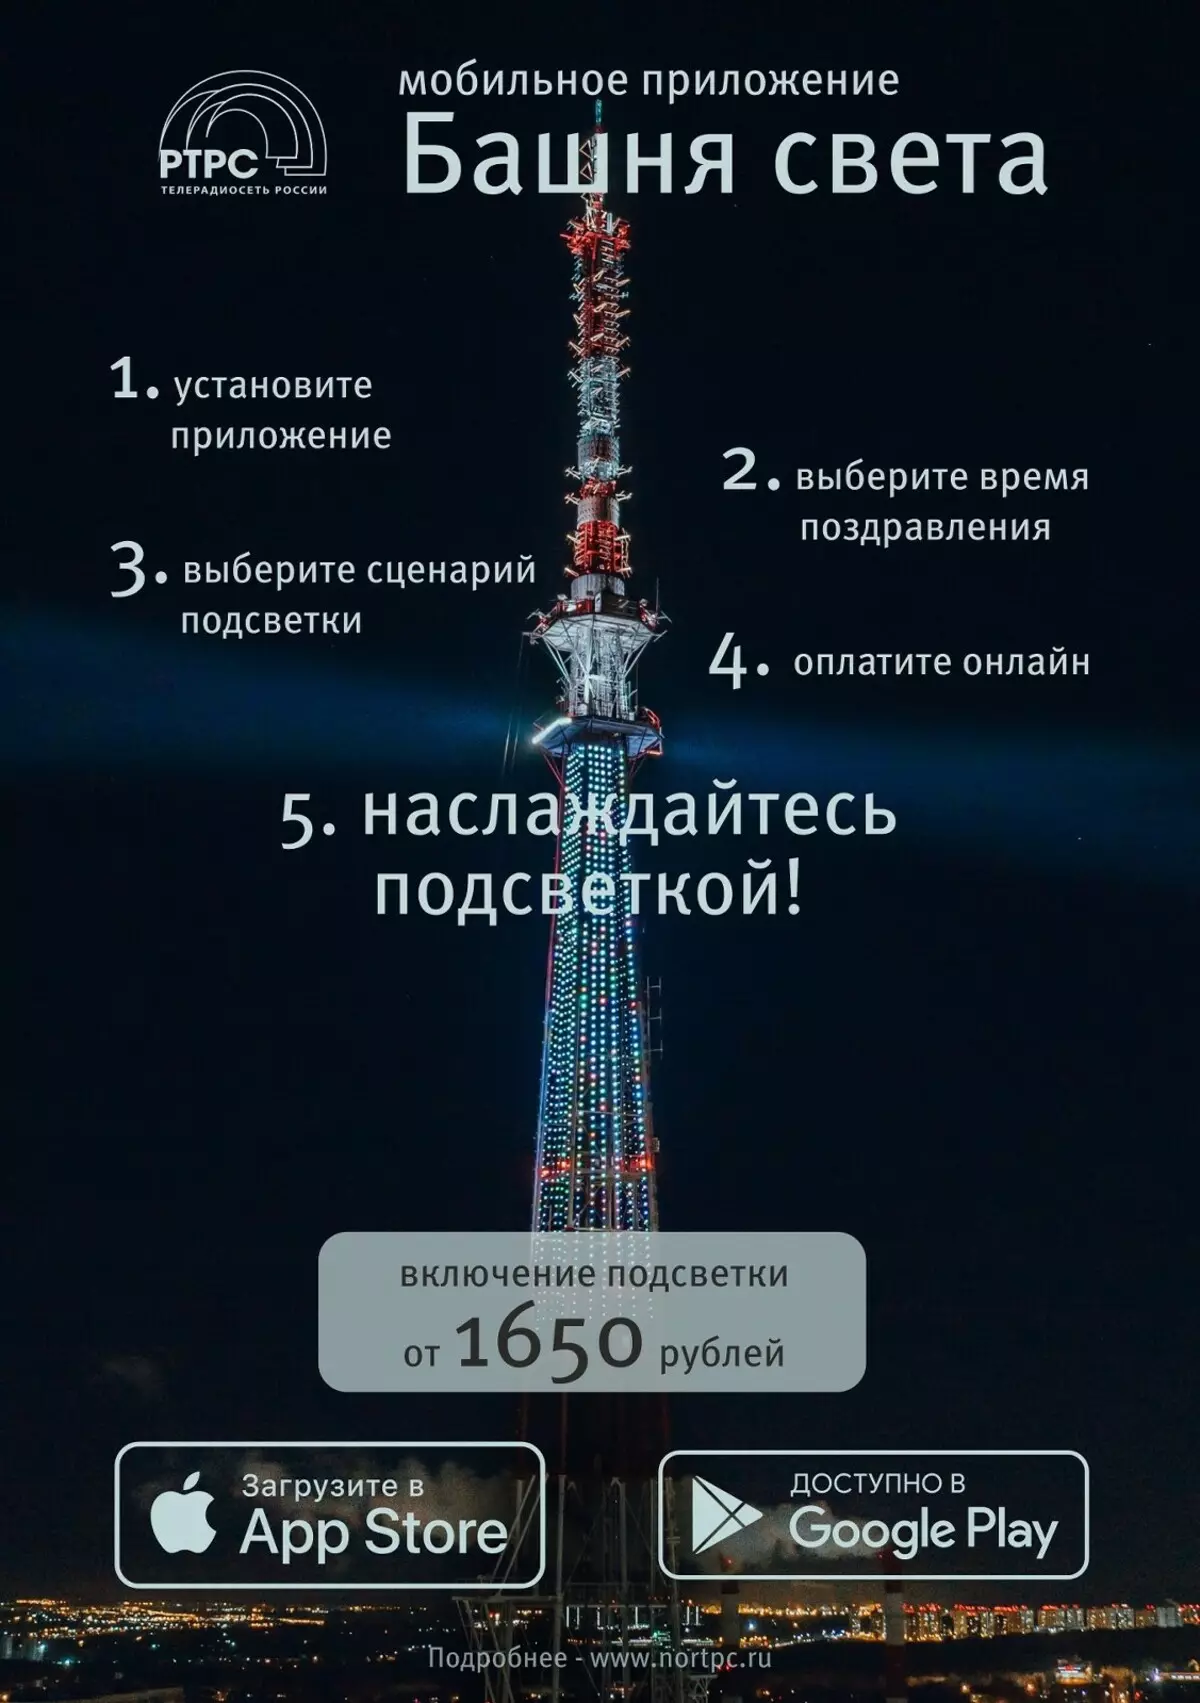 Nizhny Novgorod kan göra ljus grattis på tv 20952_2